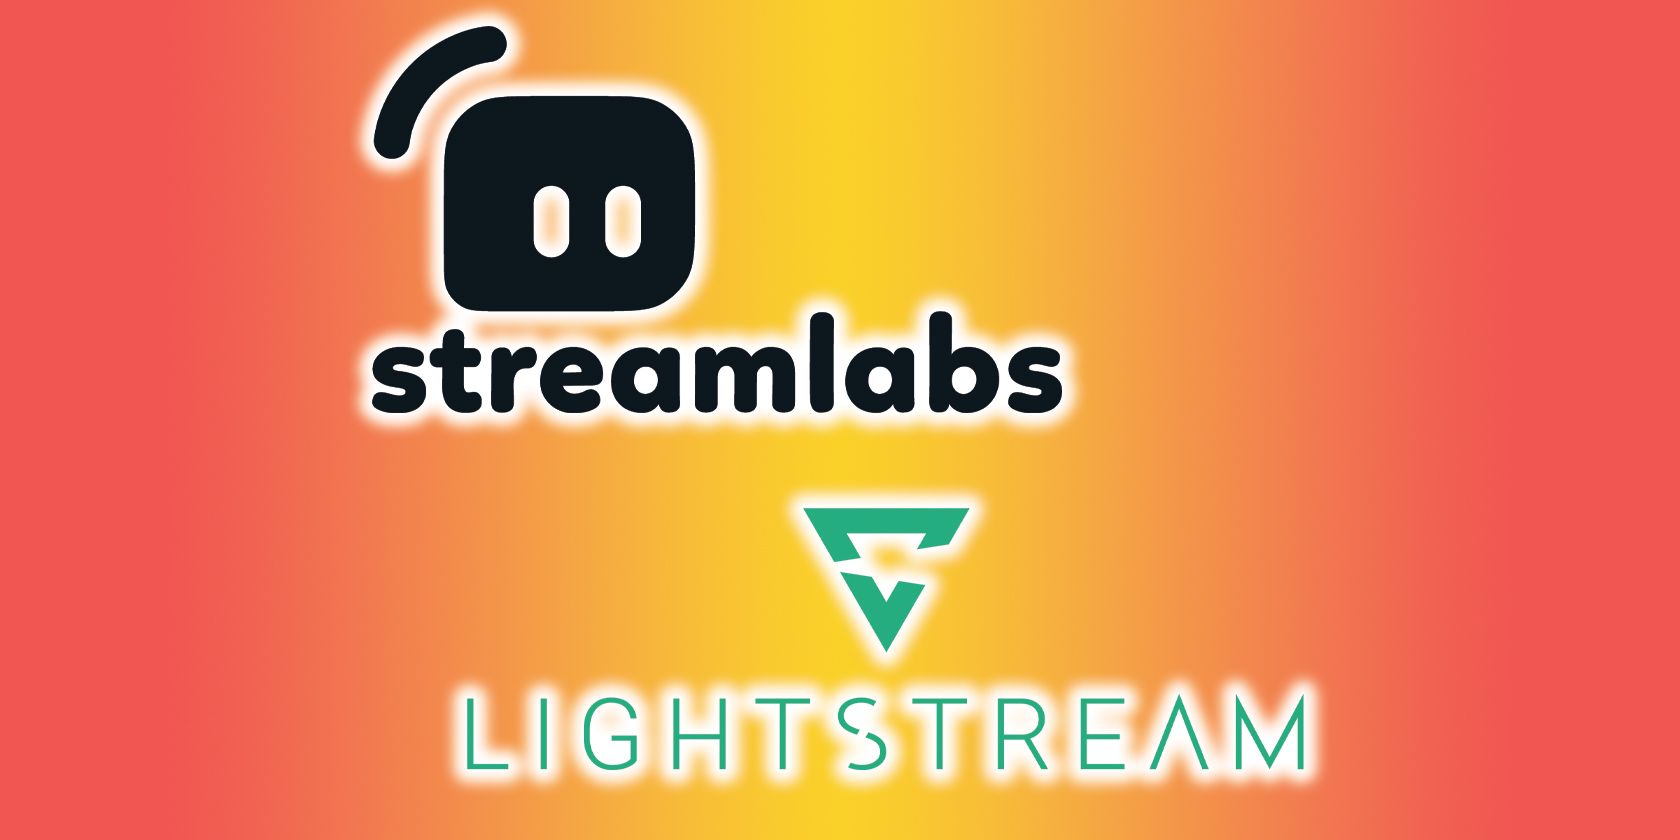 streamlabs lightstream logo